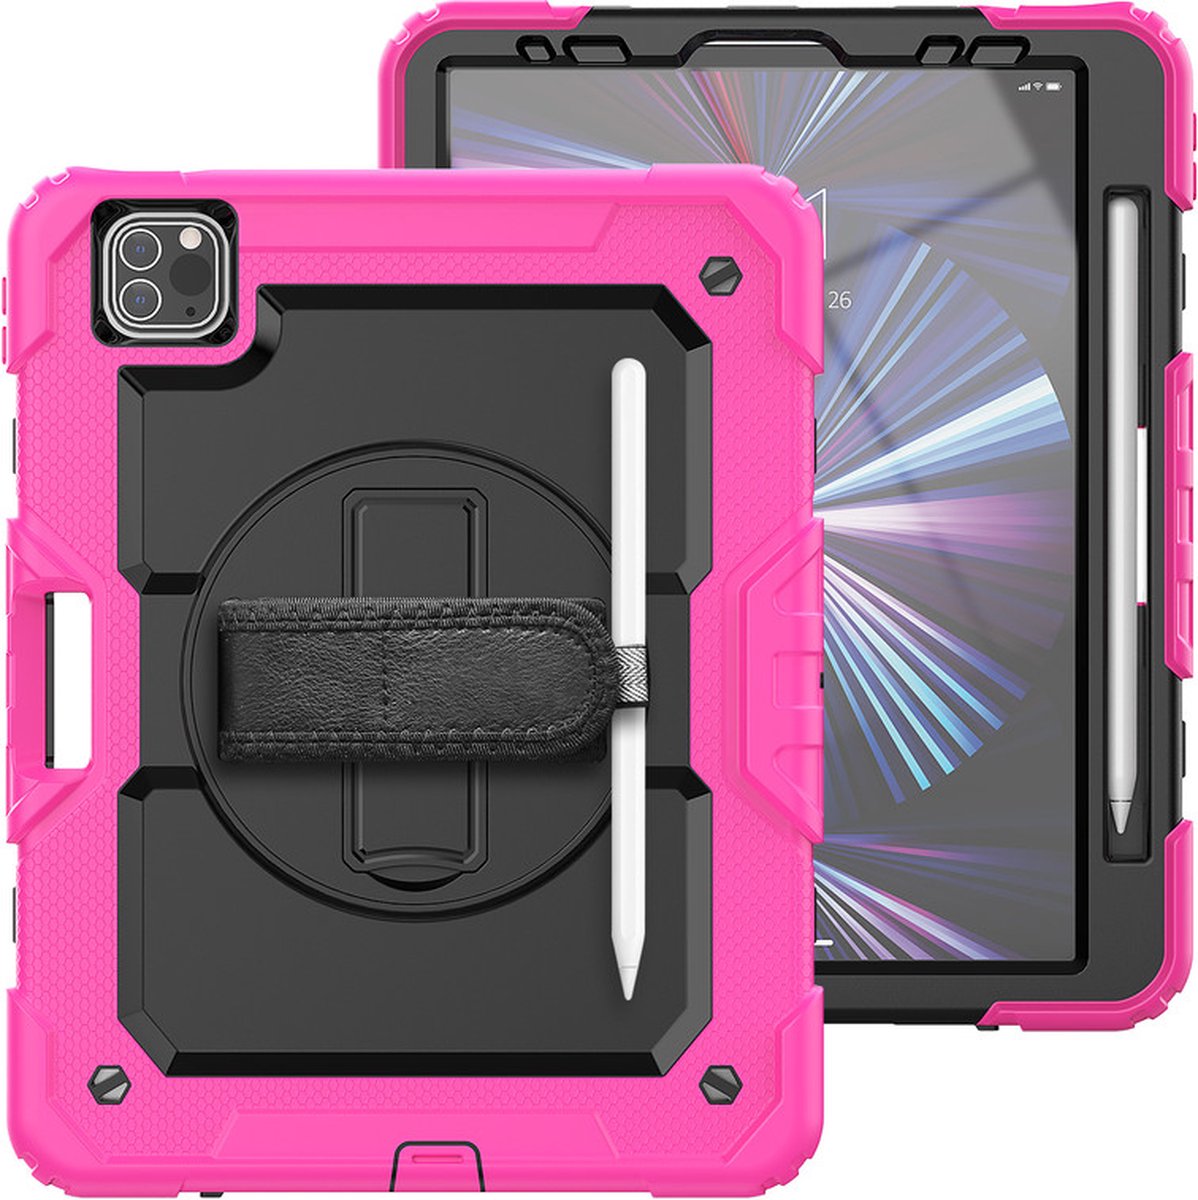 iPad Pro 11 (2018 / 2020 / 2021) / Air 4 Tablet Kids case - Armor Case - Schermbeschermer - ShockProof - Handstrap - met Schouderband - Zwart / Roze - ZT Accessoires